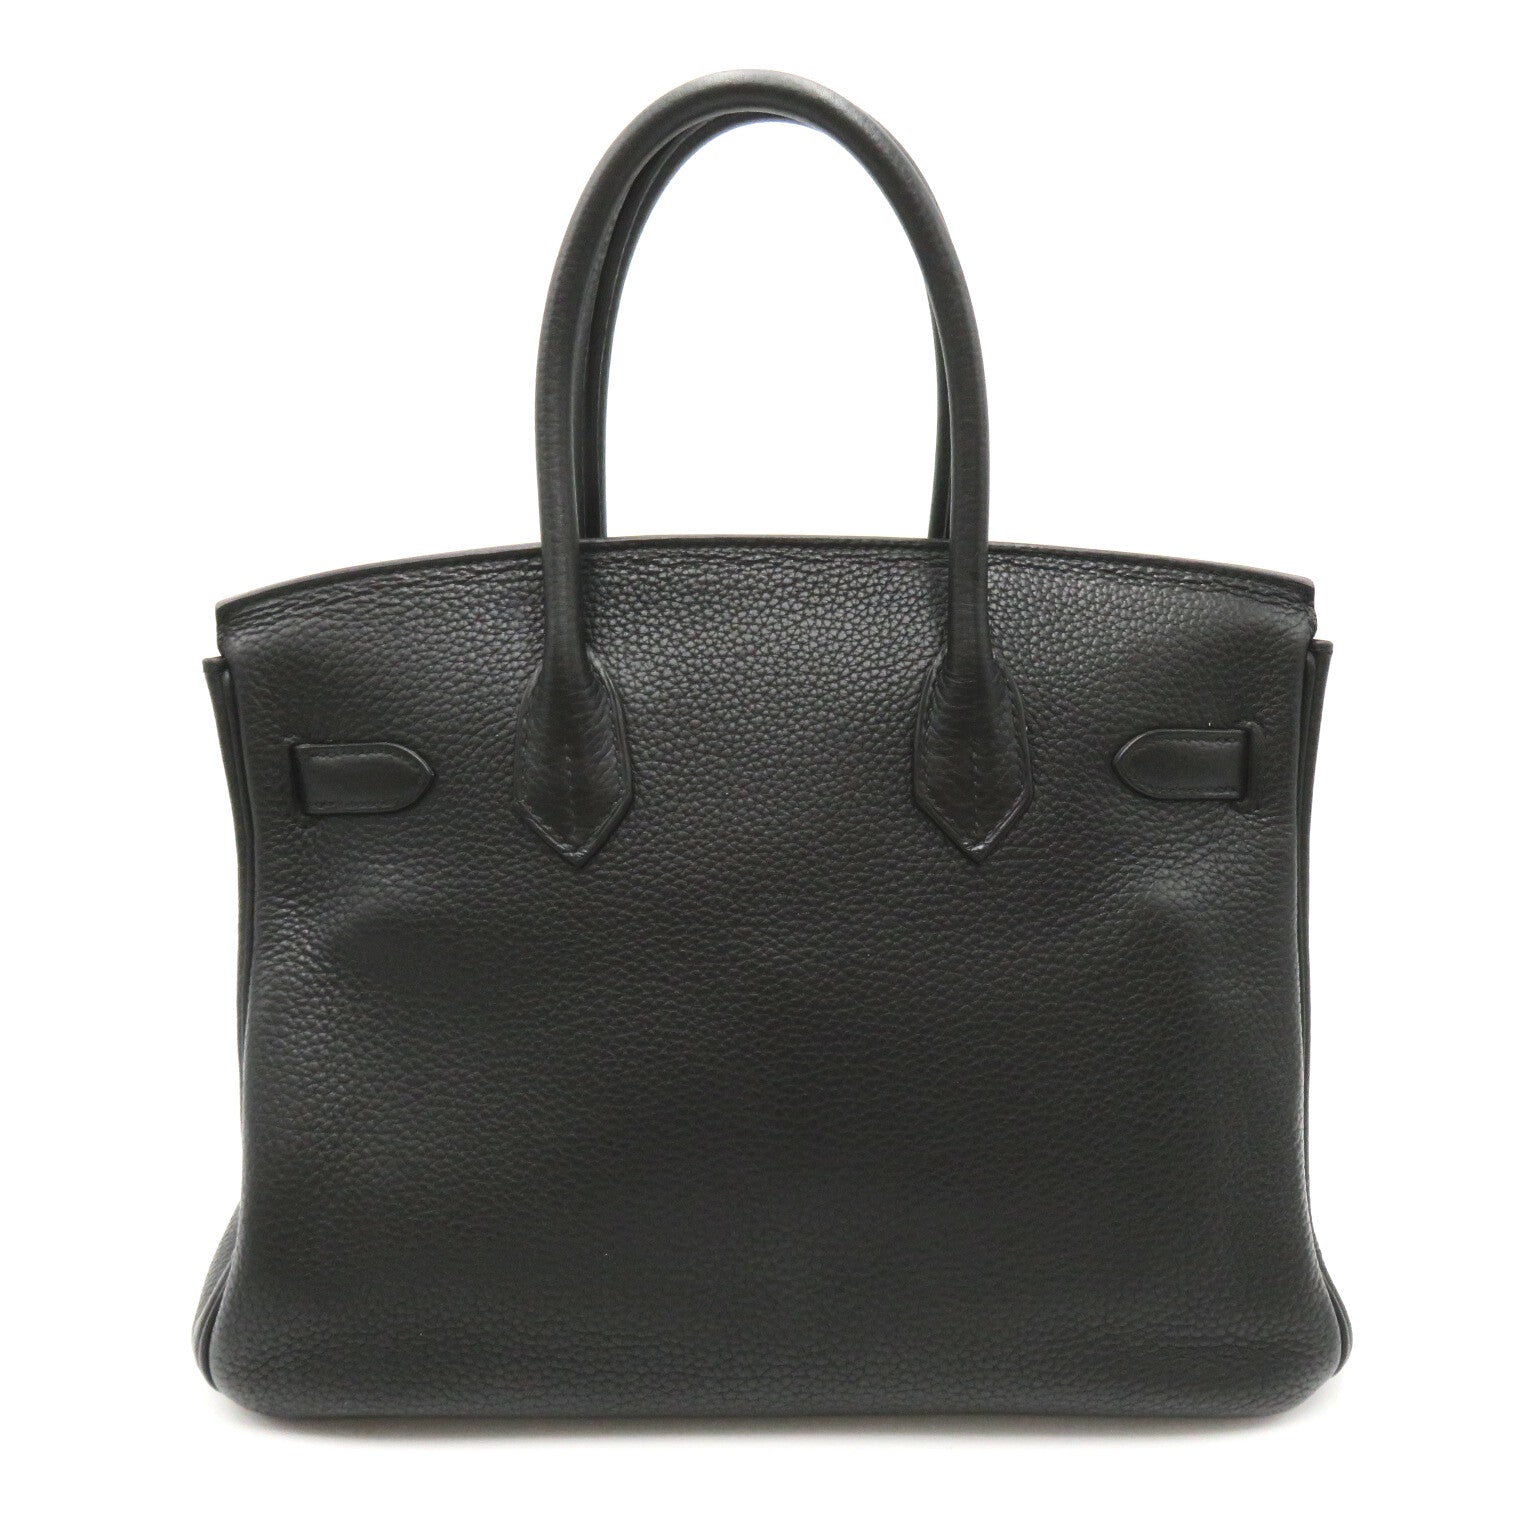 Hermes Birkin 30 Black Handbag Handbag Handbag